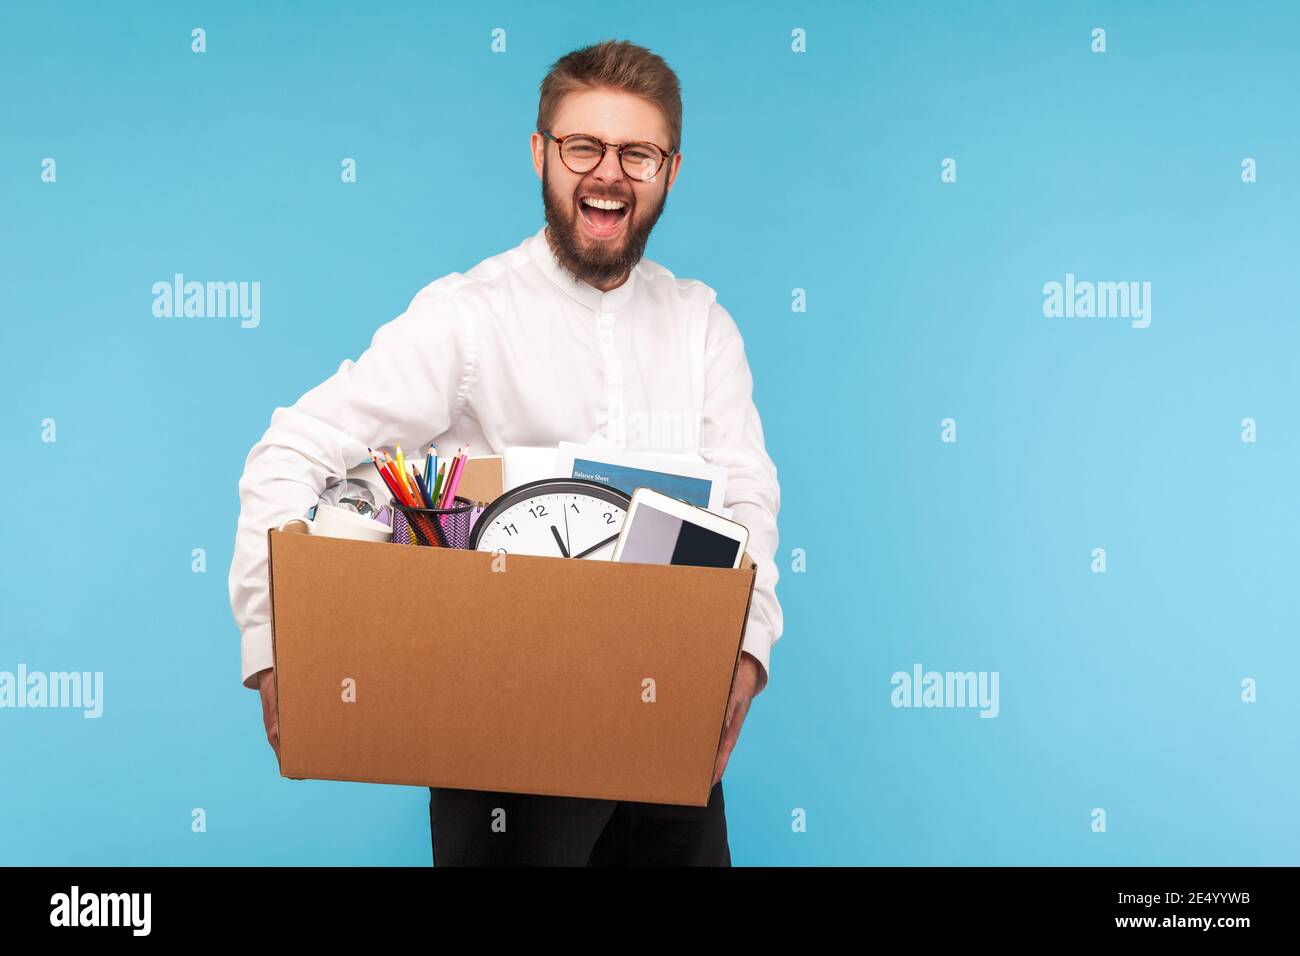 Extrem glücklicher Mann mit Bart in Brillen und weißem Hemd lächelnd hält großen Karton mit seinem Zeug, immer neue Arbeit oder Arbeitsförderung. Indoo Stockfoto